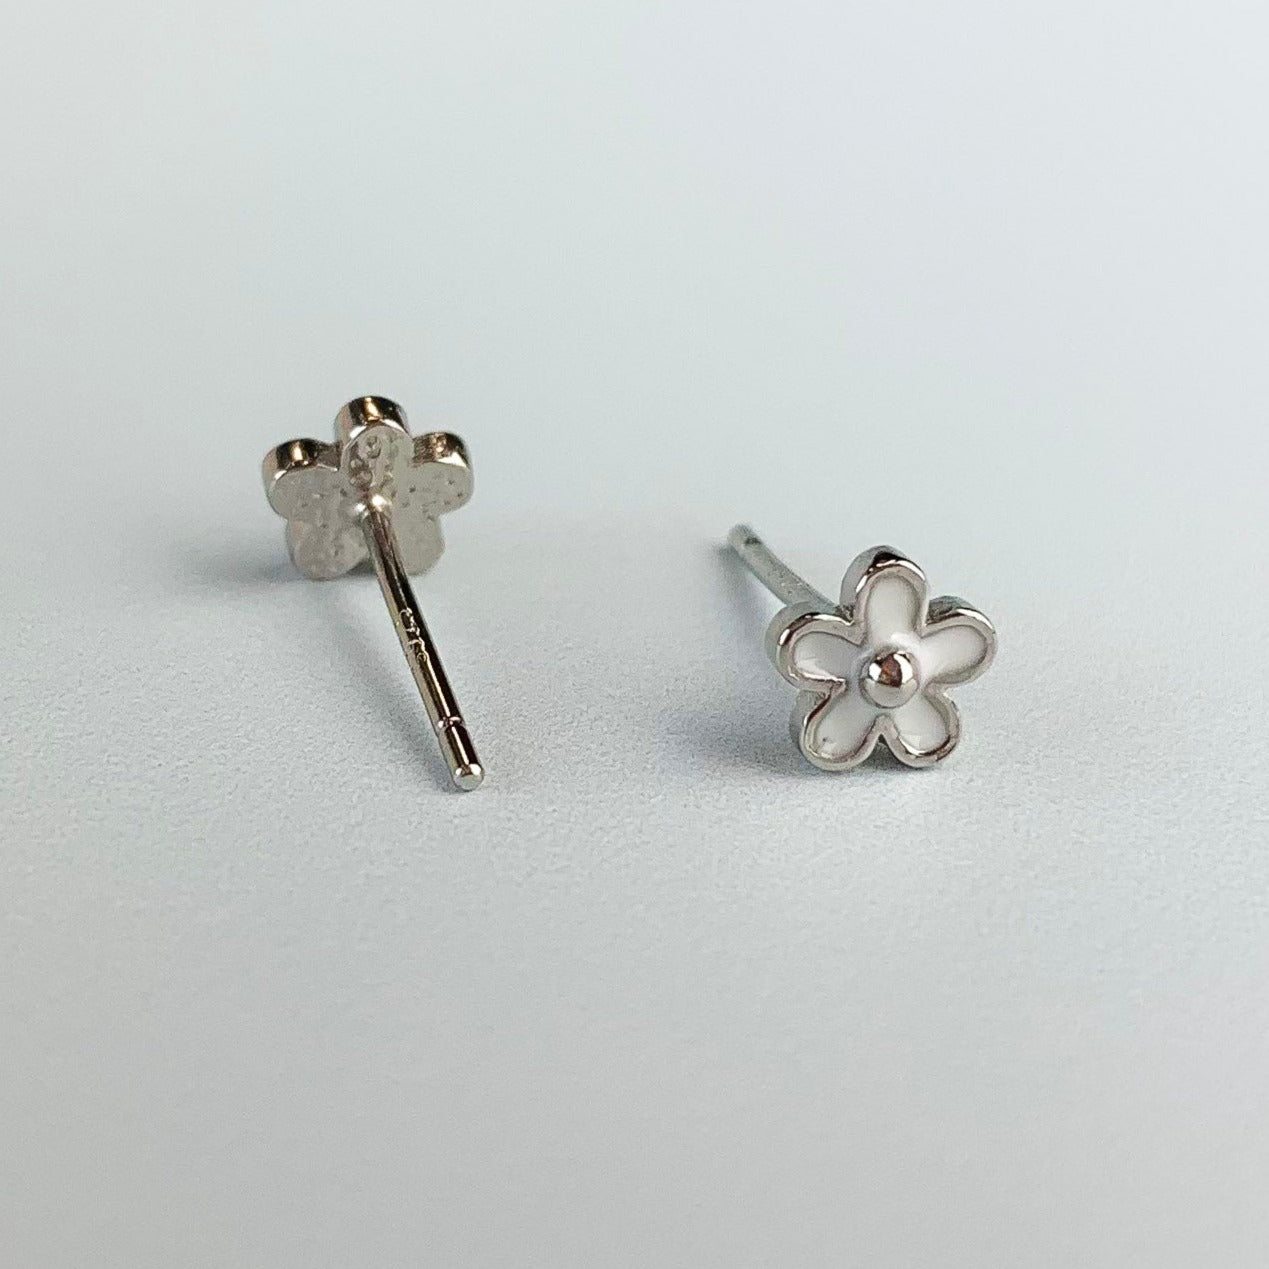 Black or White Flower Stud Earrings